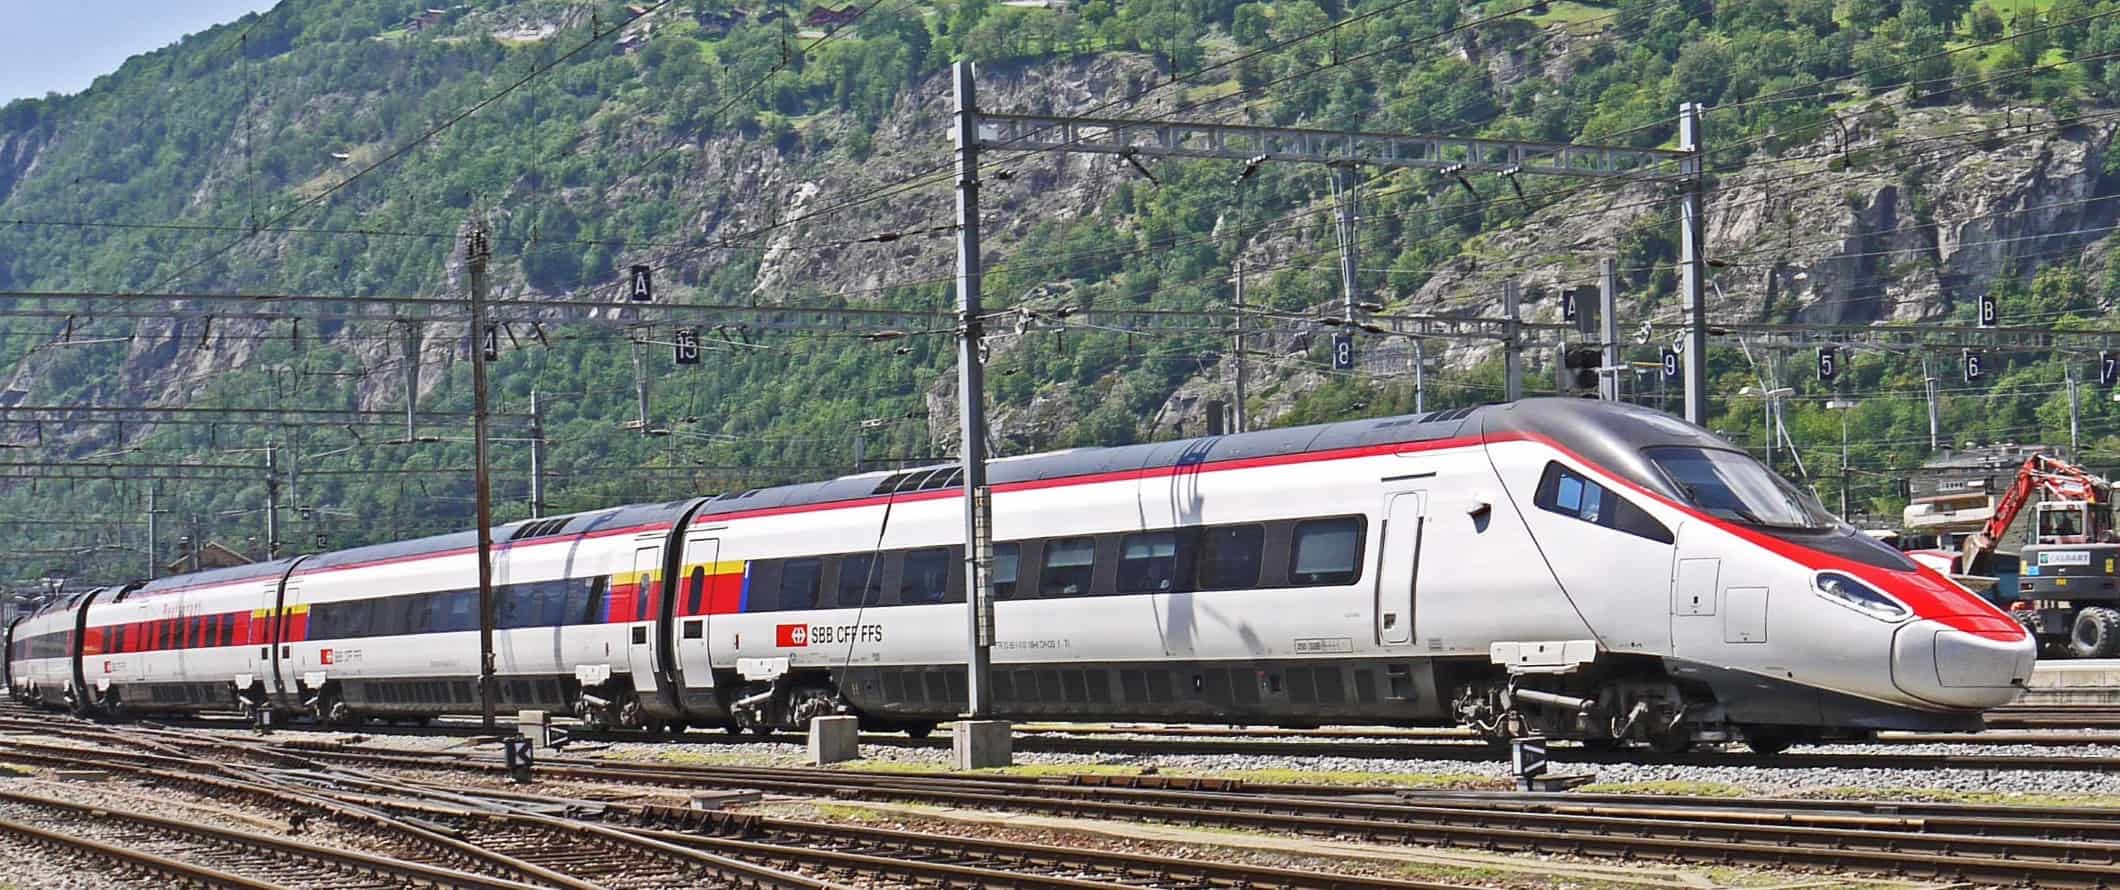 Trem de alta velocidade na Itália.